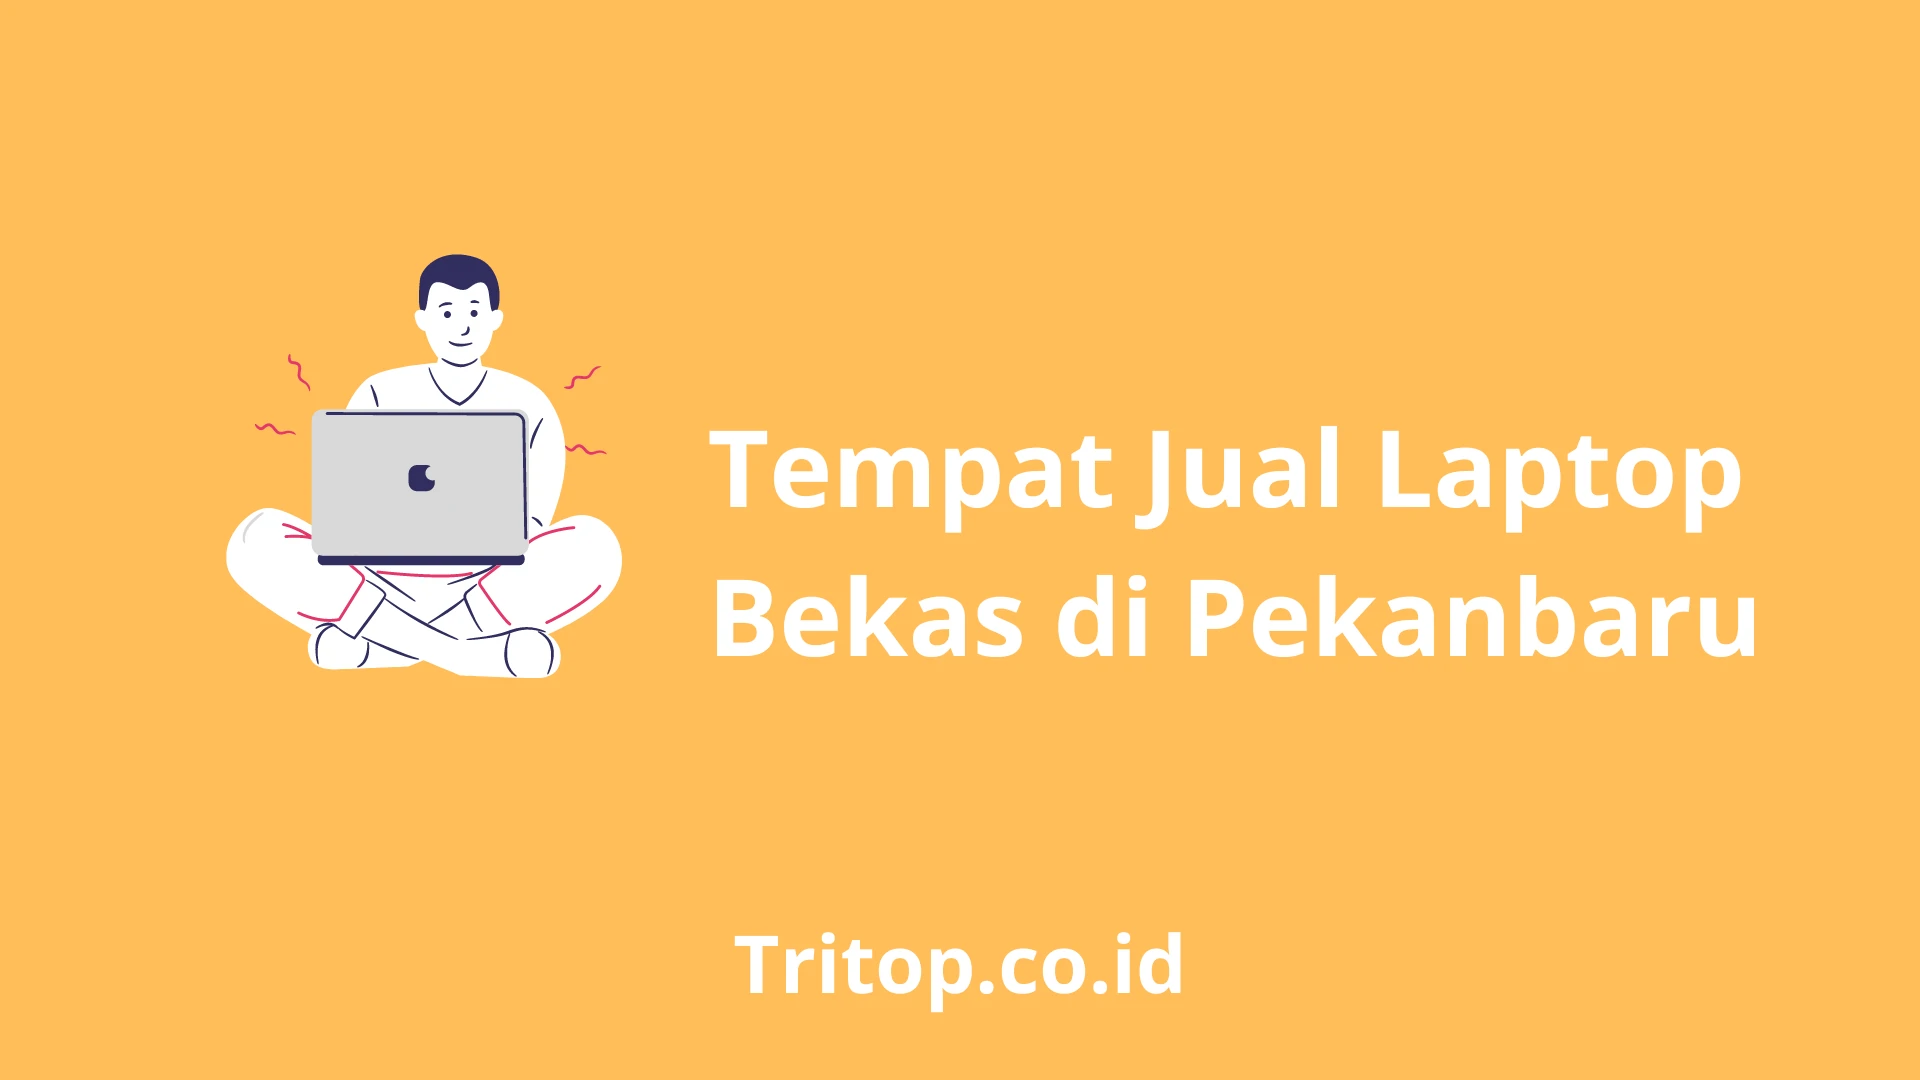 Tempat Jual Laptop Bekas Pekanbaru tritop.co.id